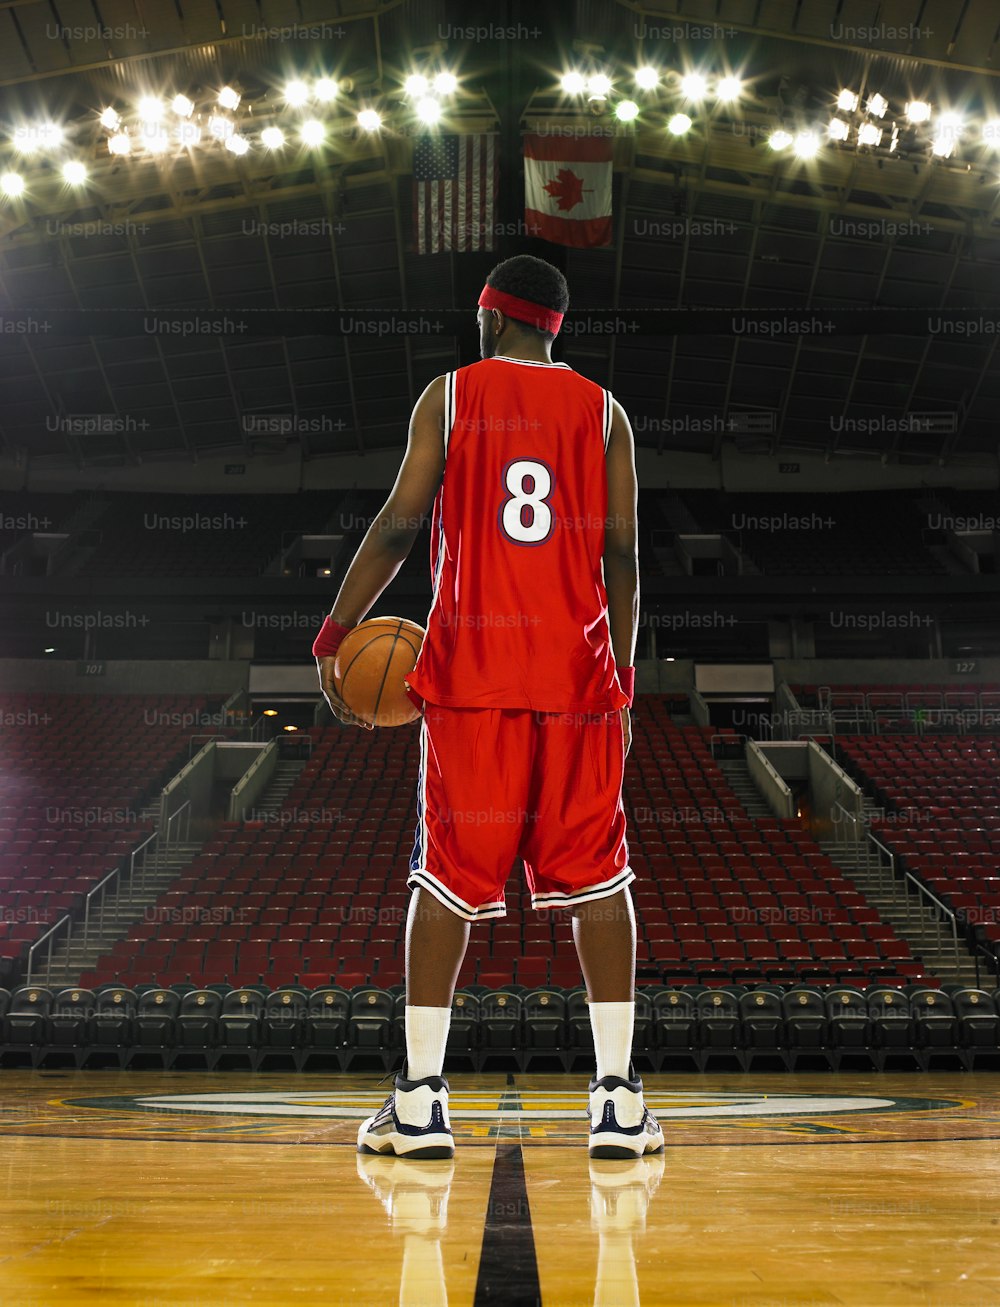 Ein Basketballspieler in einer roten Uniform, der einen Basketball hält